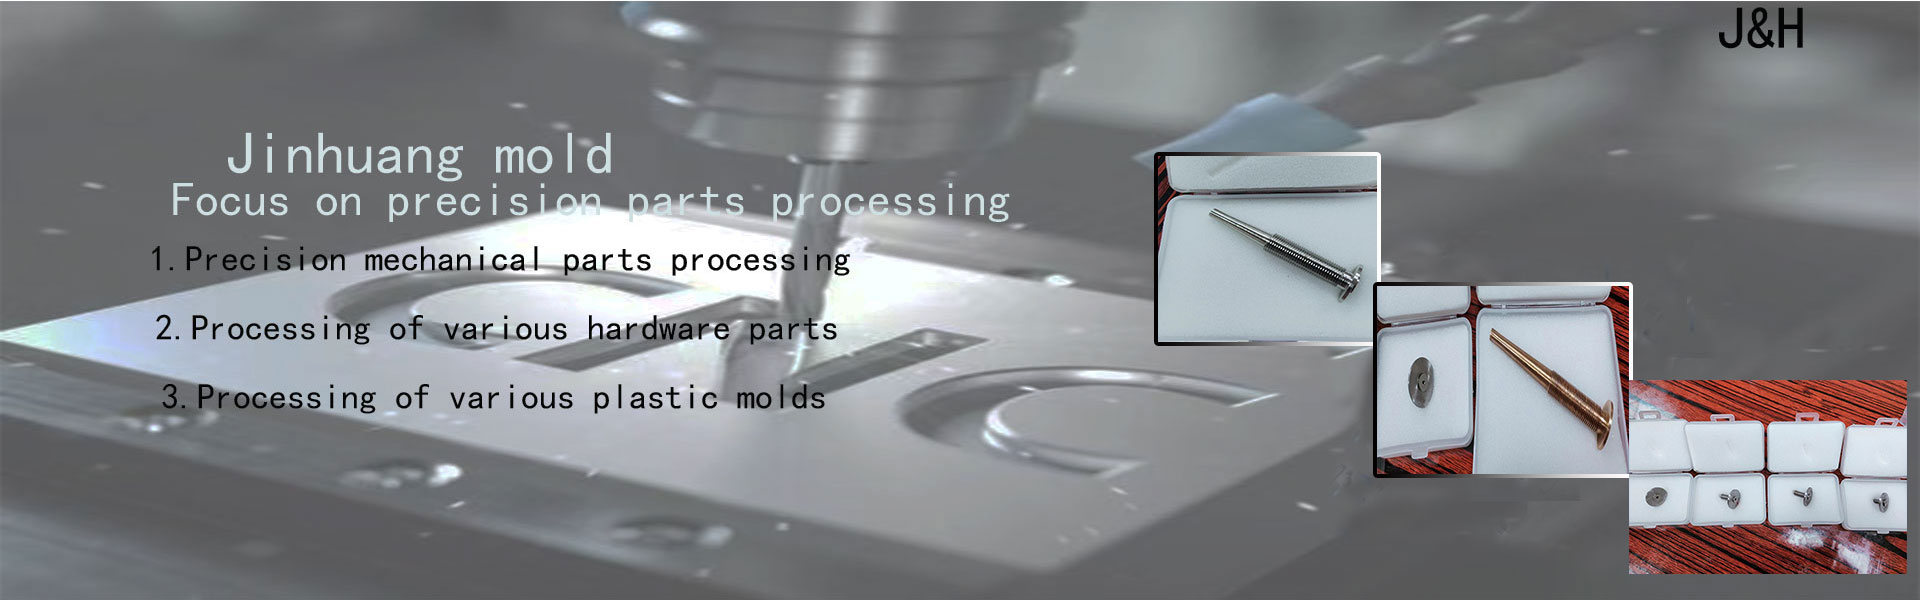 Plasisk form, hardwareform, præcisionsdele,Dongguan Jinhuang Mold Co., Ltd